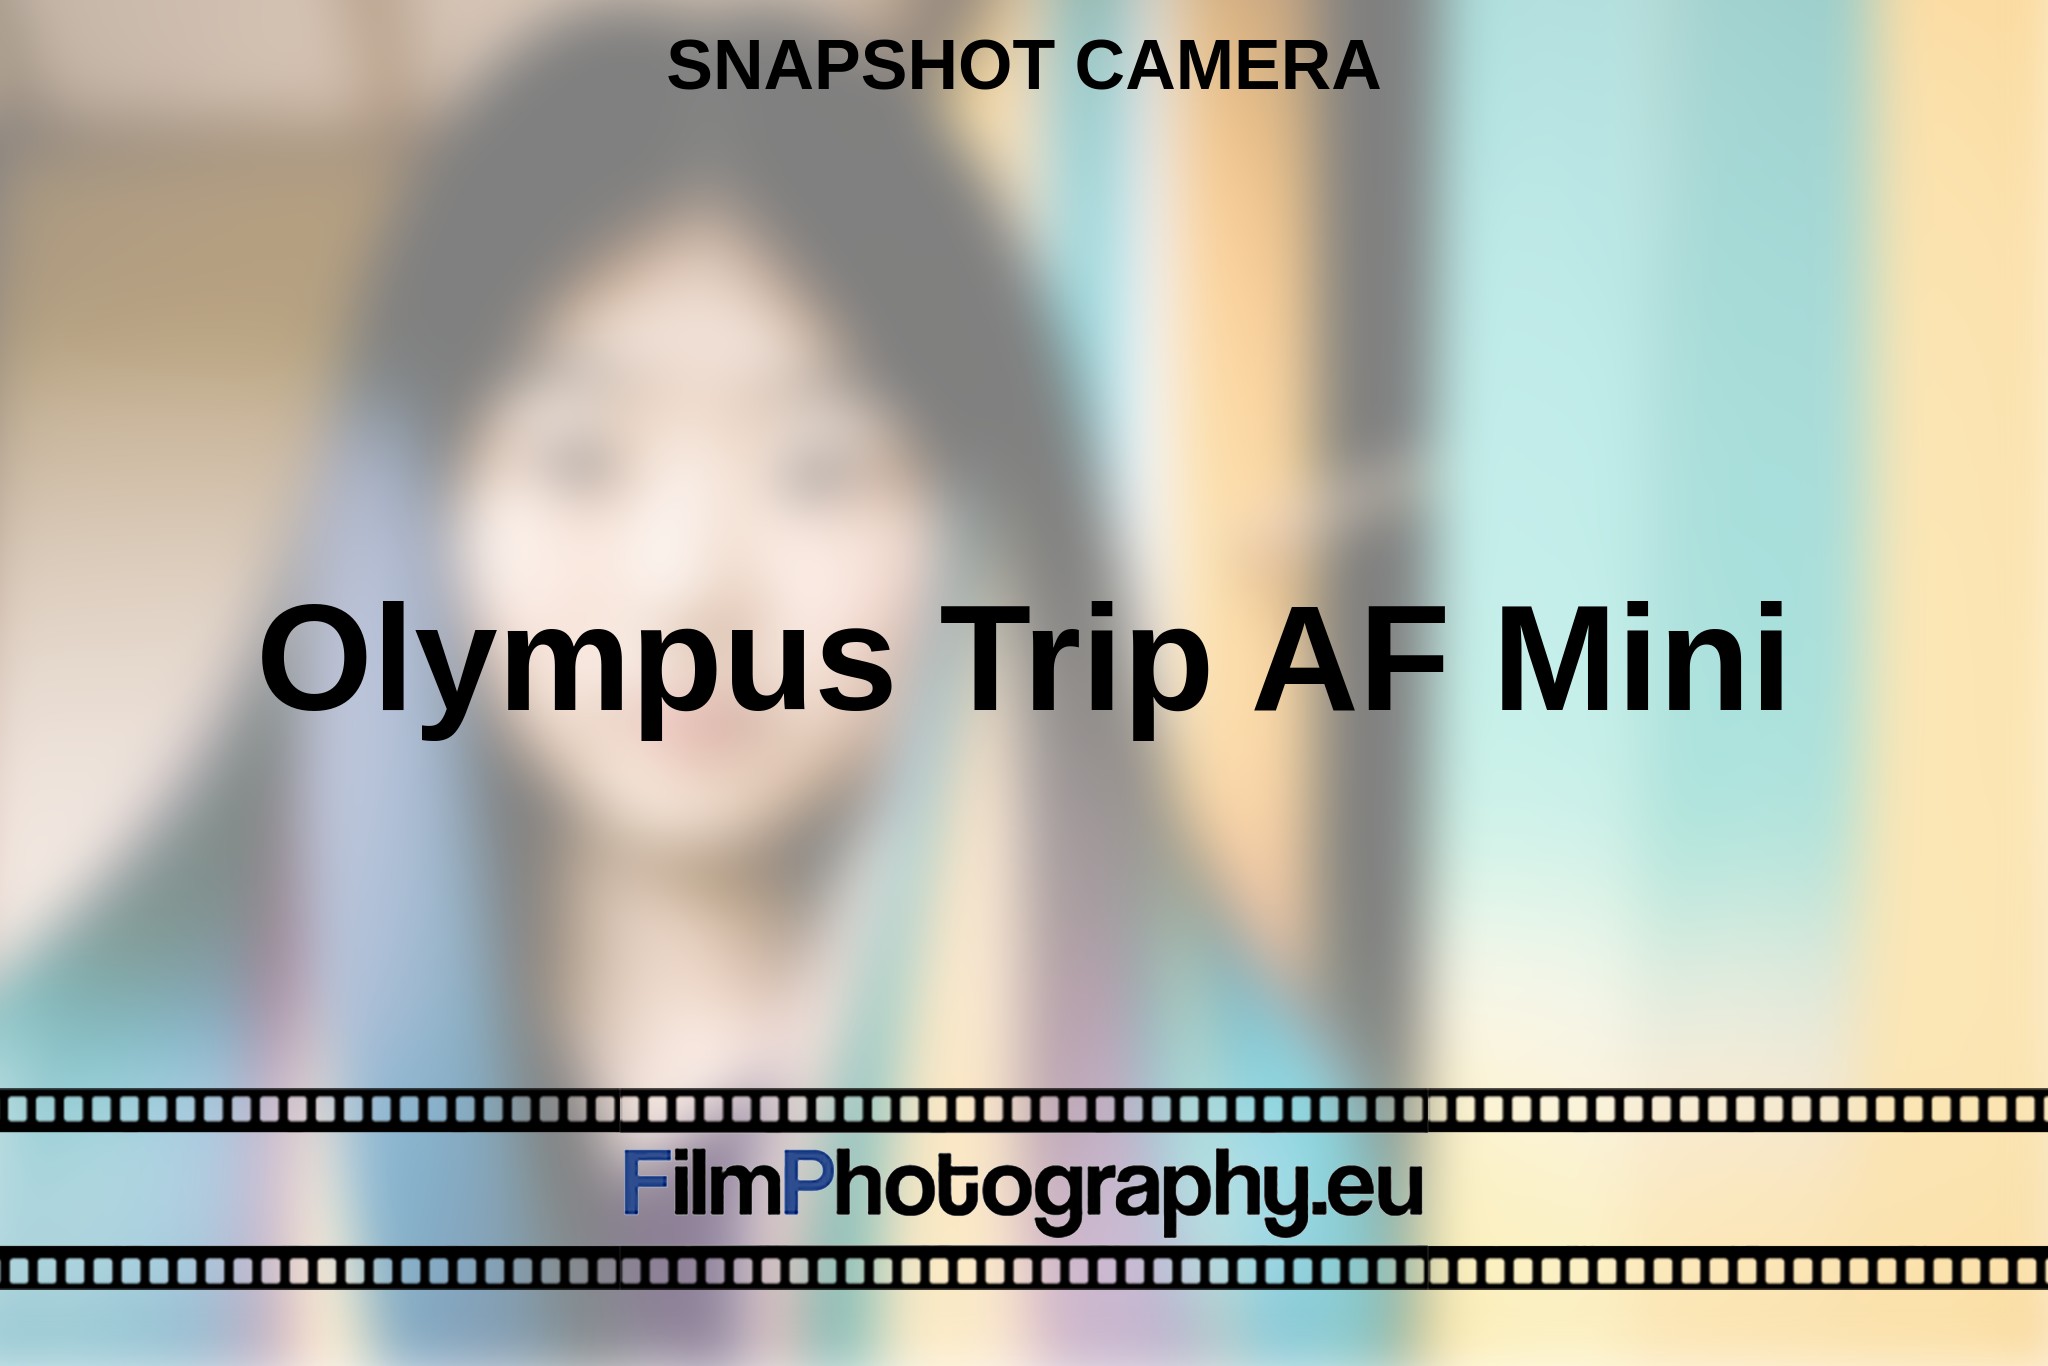 olympus-trip-af-mini-snapshot-camera-en-bnv.jpg